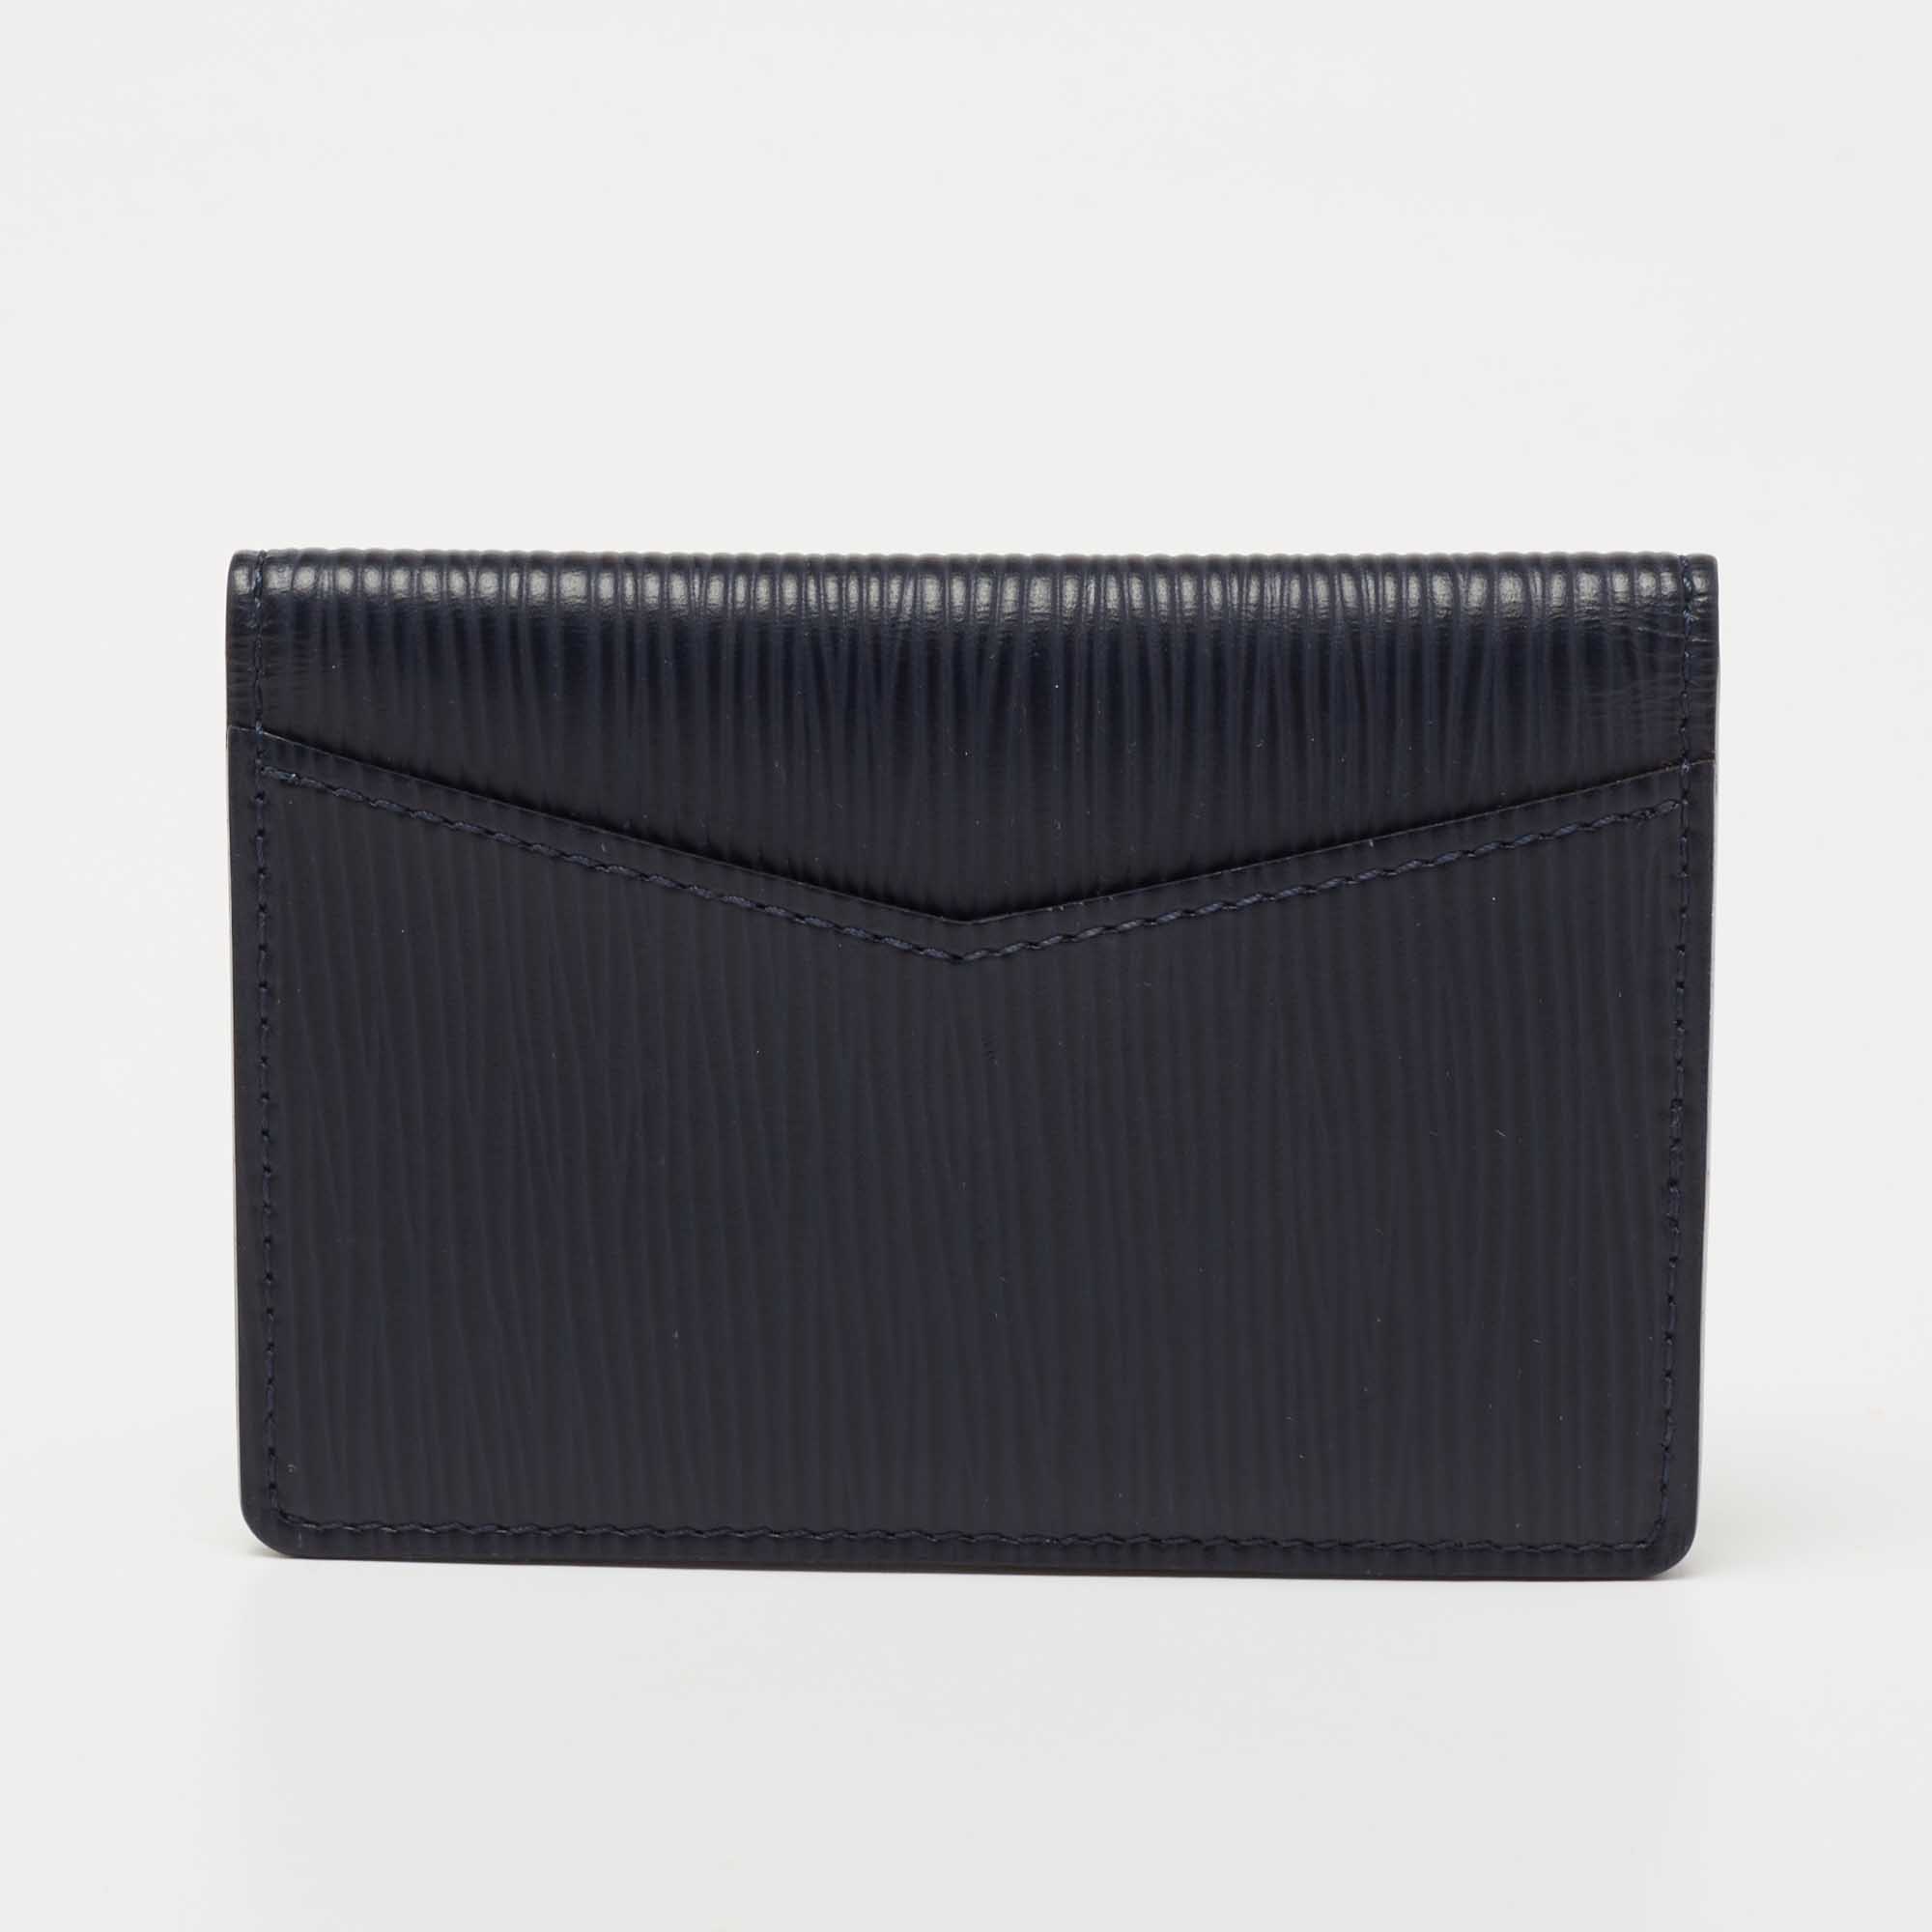 Pocket organizer cloth small bag Louis Vuitton Blue in Cloth - 31635585